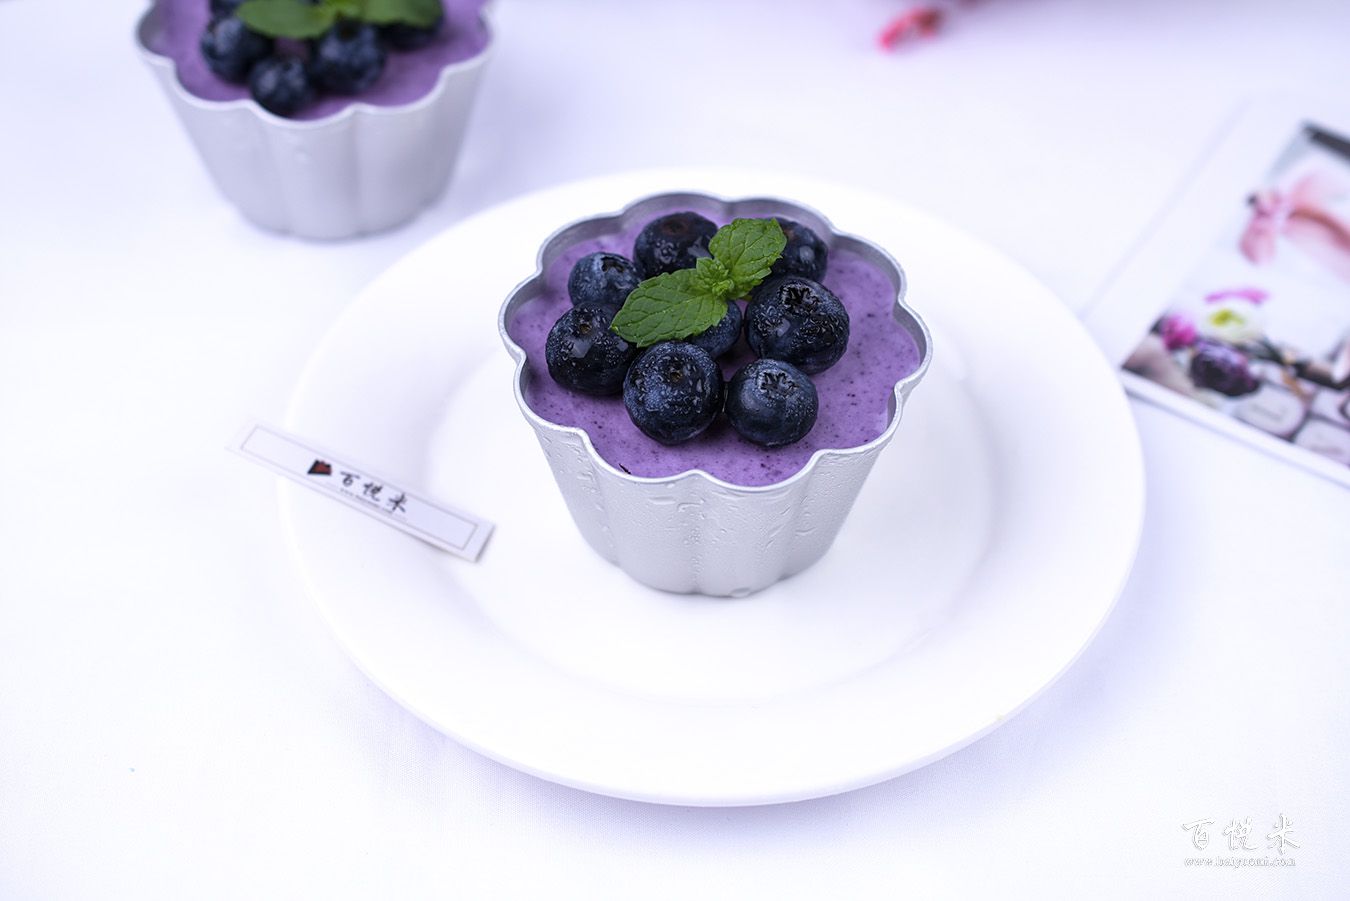 蓝莓酸奶蛋糕怎么做_蓝莓酸奶蛋糕的做法_Eva小佳美食_豆果美食